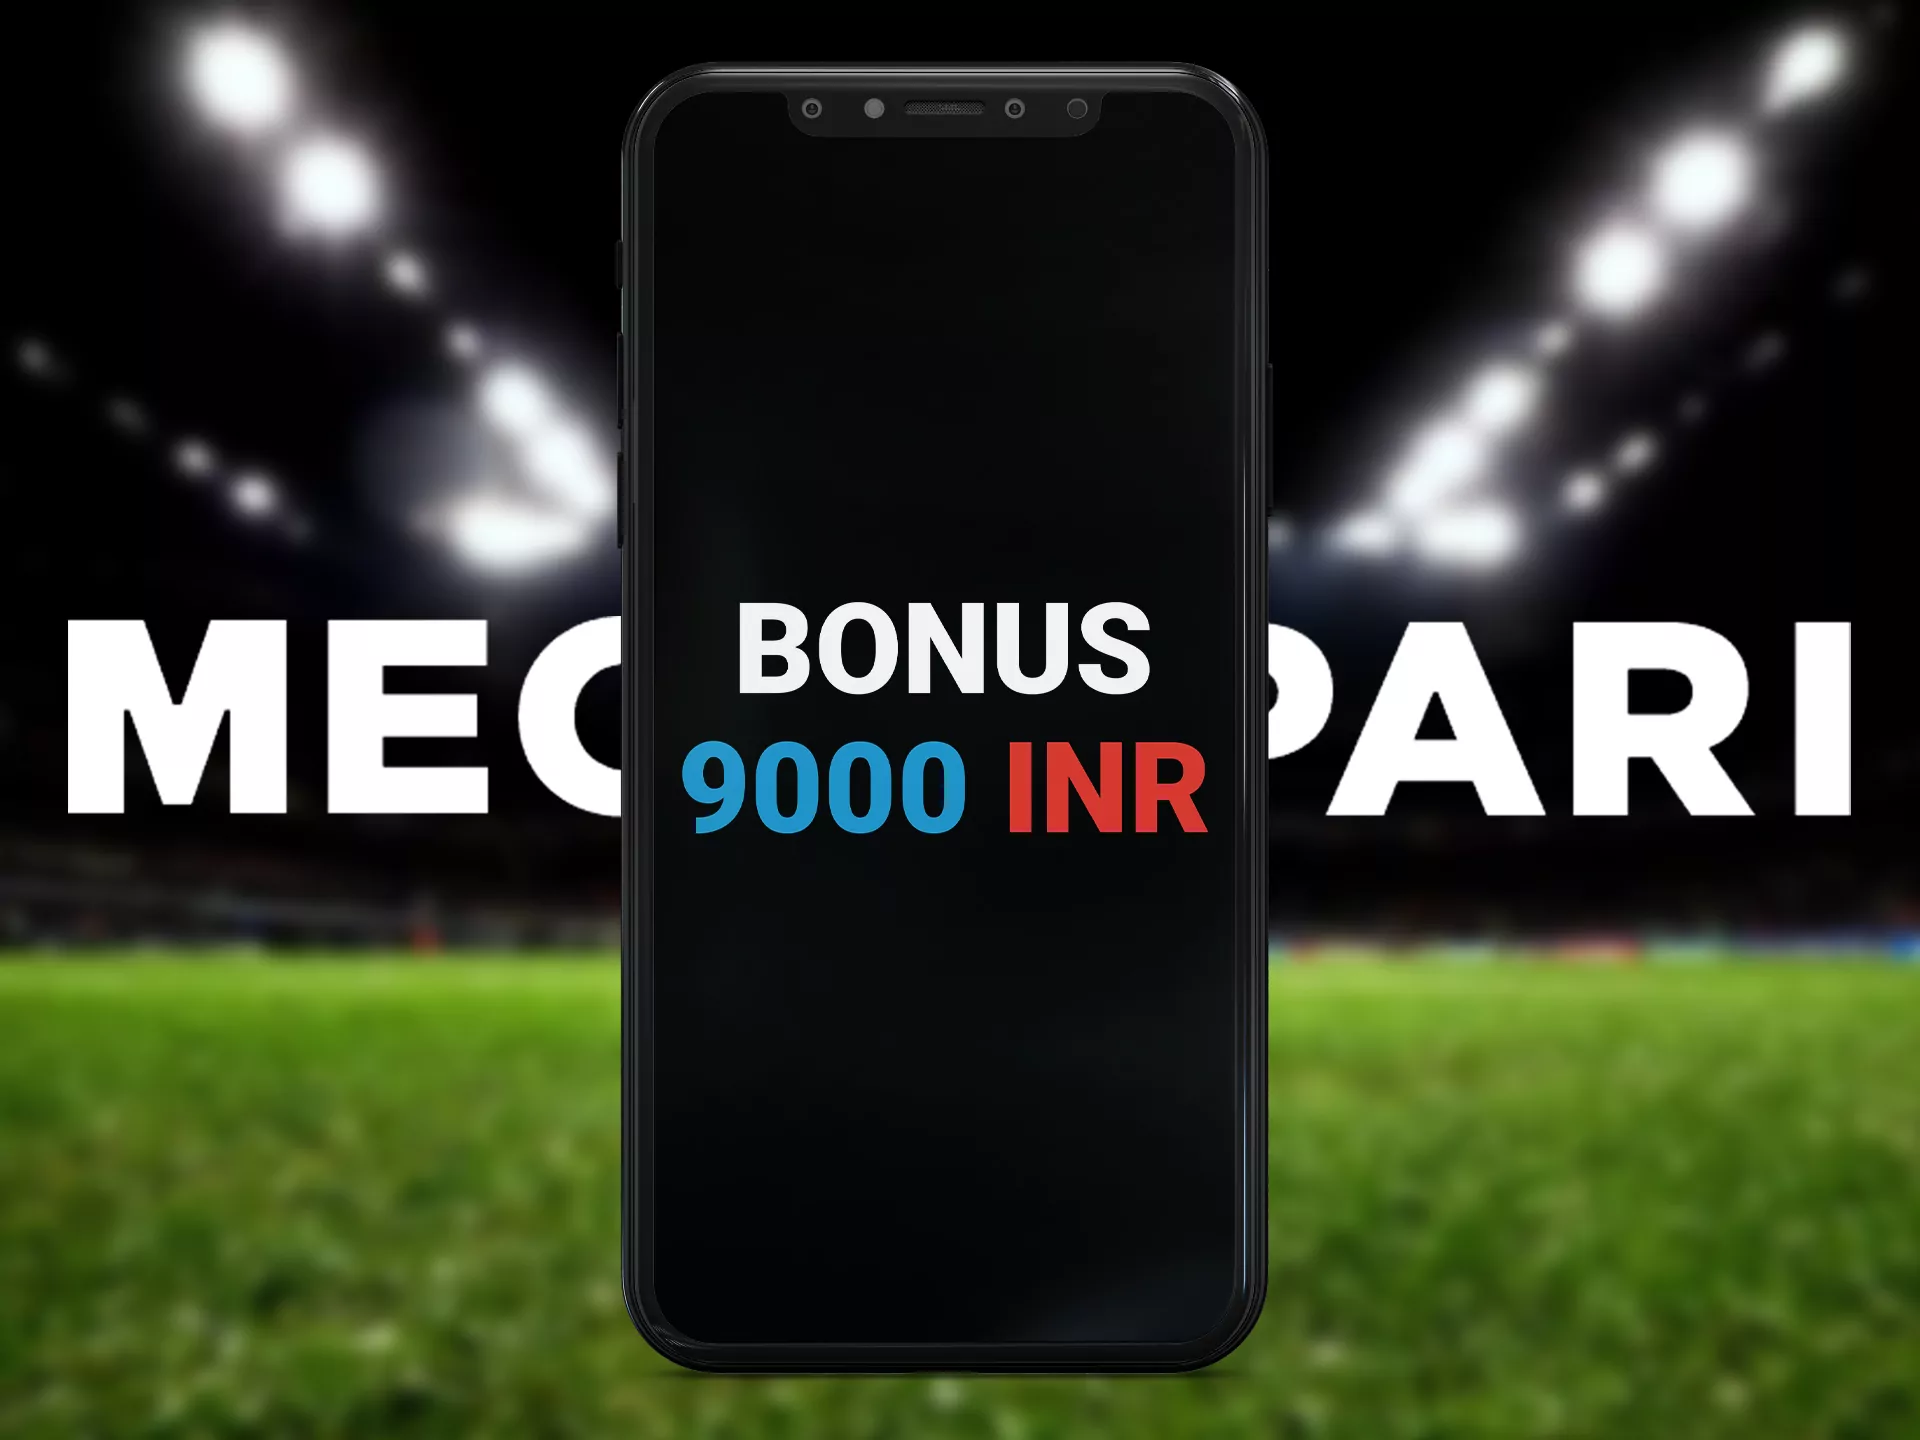 Get a +100% first deposit bonus up to INR 17,000 after Megapari registration.